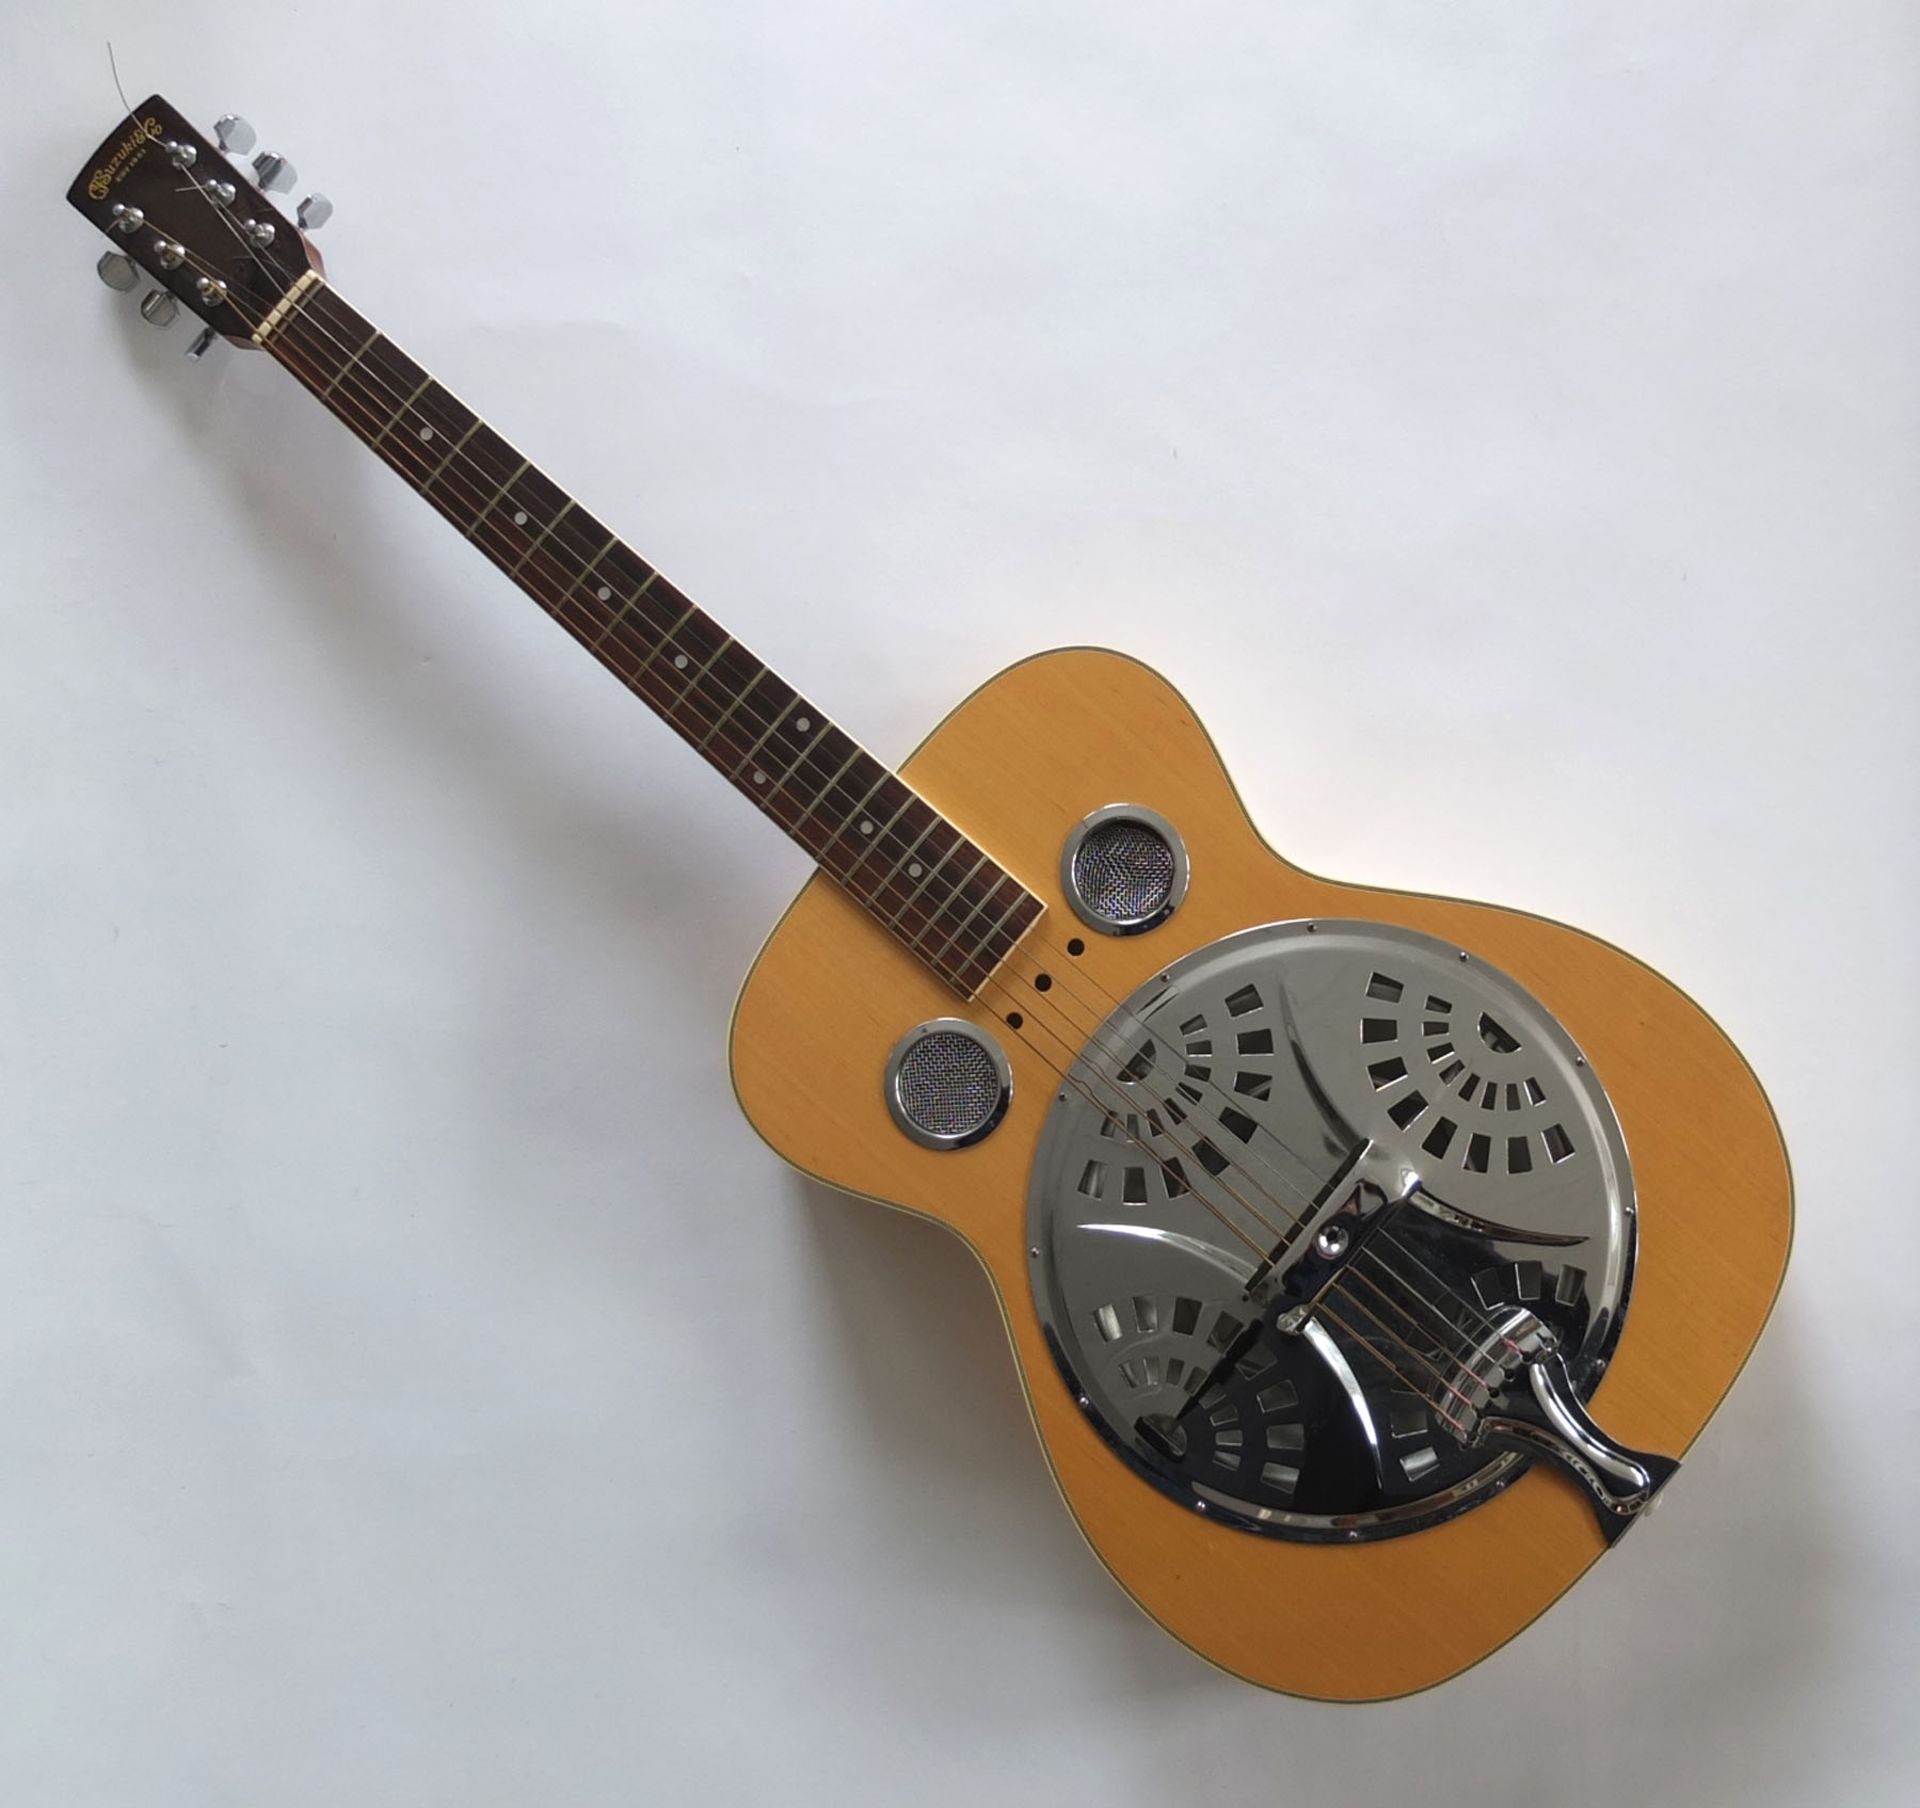 DOBRO, Hersteller C.F. Suzuki & Co./ Japan, akustische Resonatorgitarre, 1960er/ 70er-Jahre, L 101